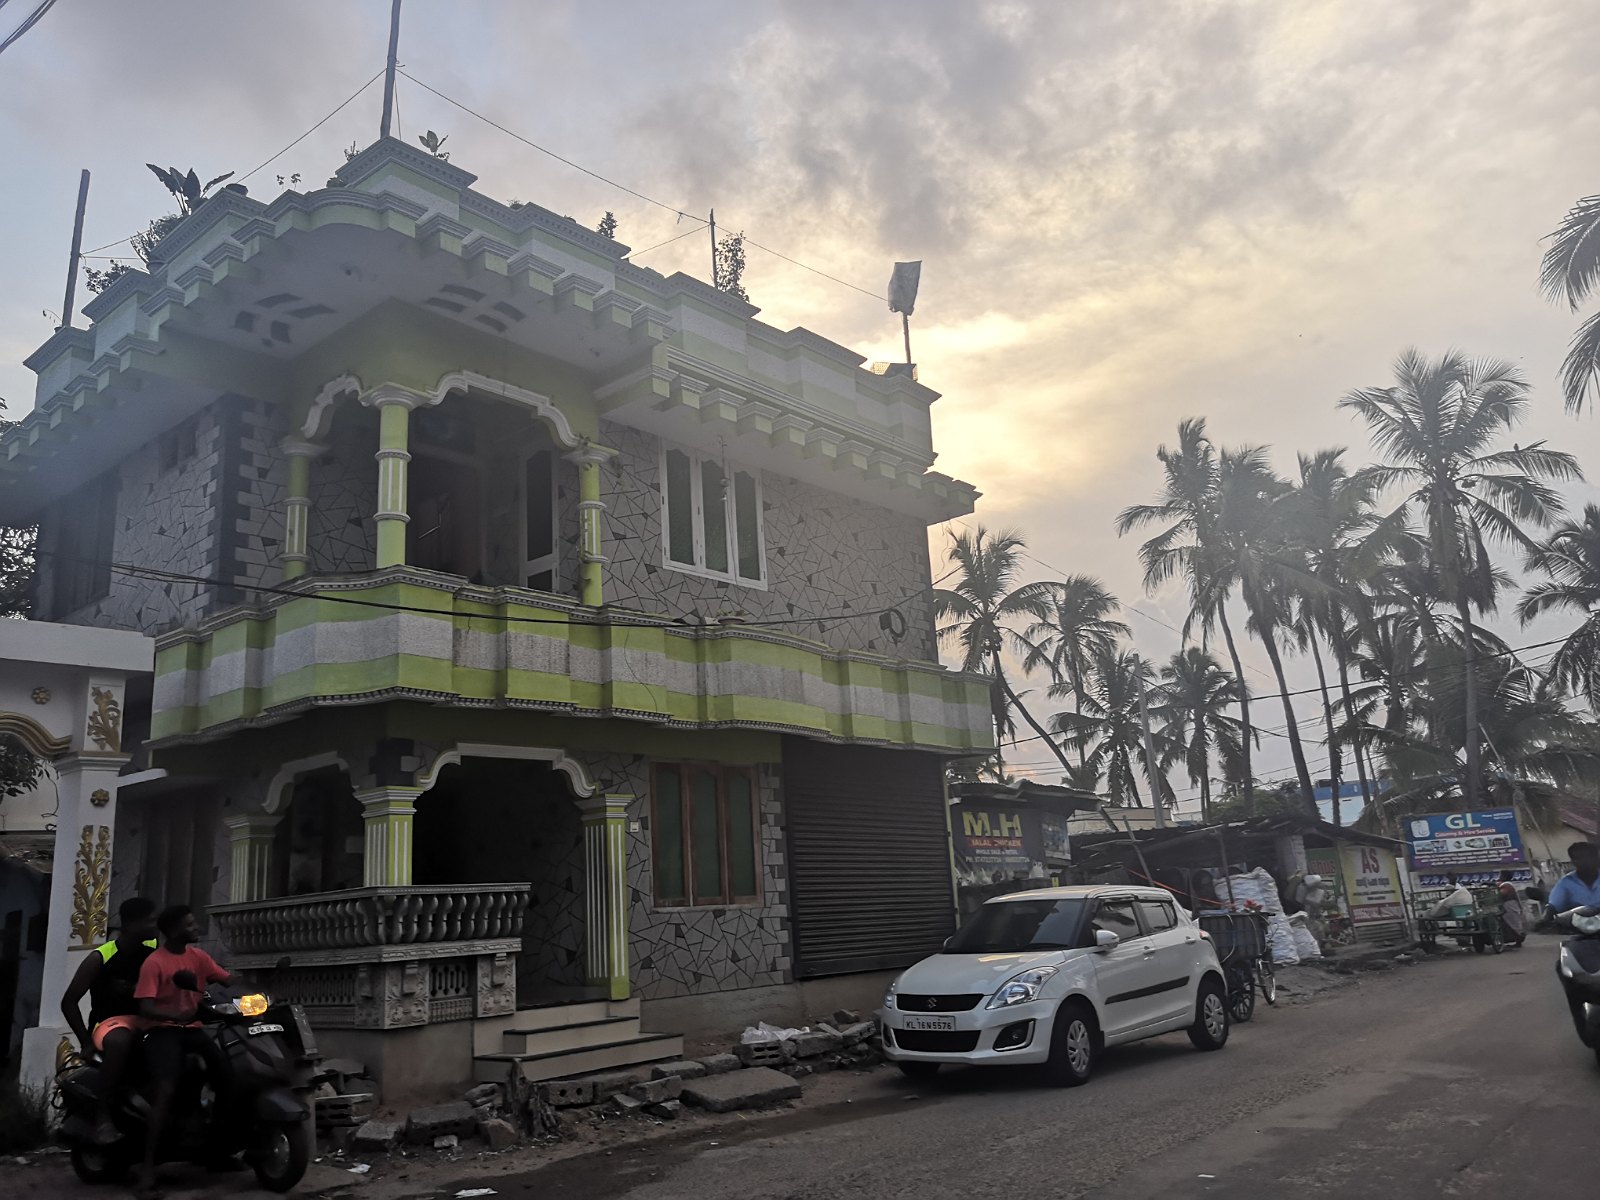 65. Ciekawy dom w mieście Trivandrum